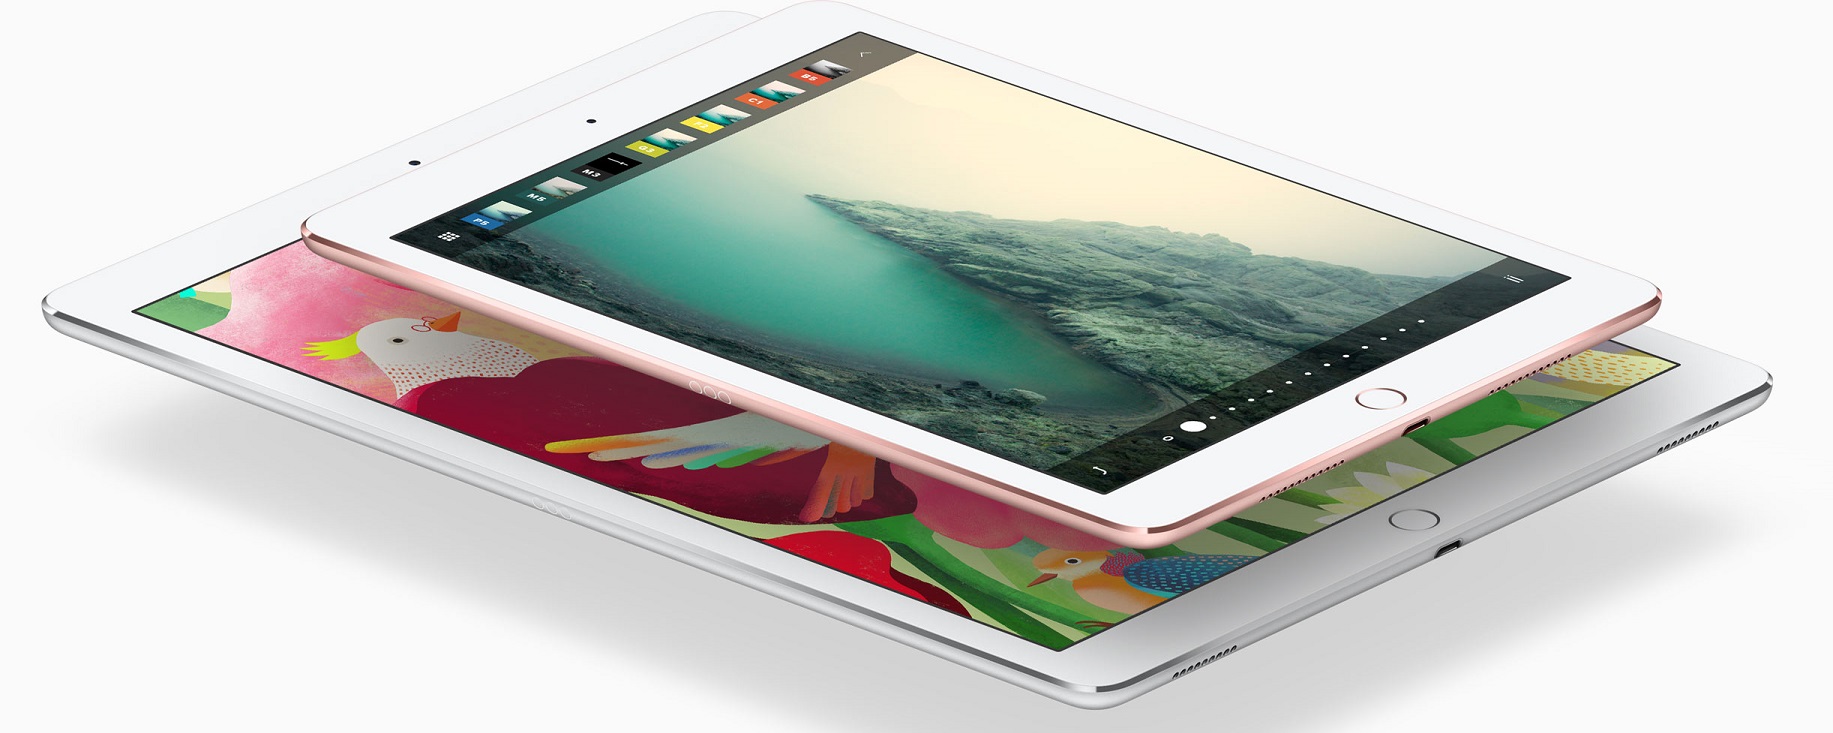 iPad Pro teraz w dwóch wielkościach: 9.7 i 12.9 cala.